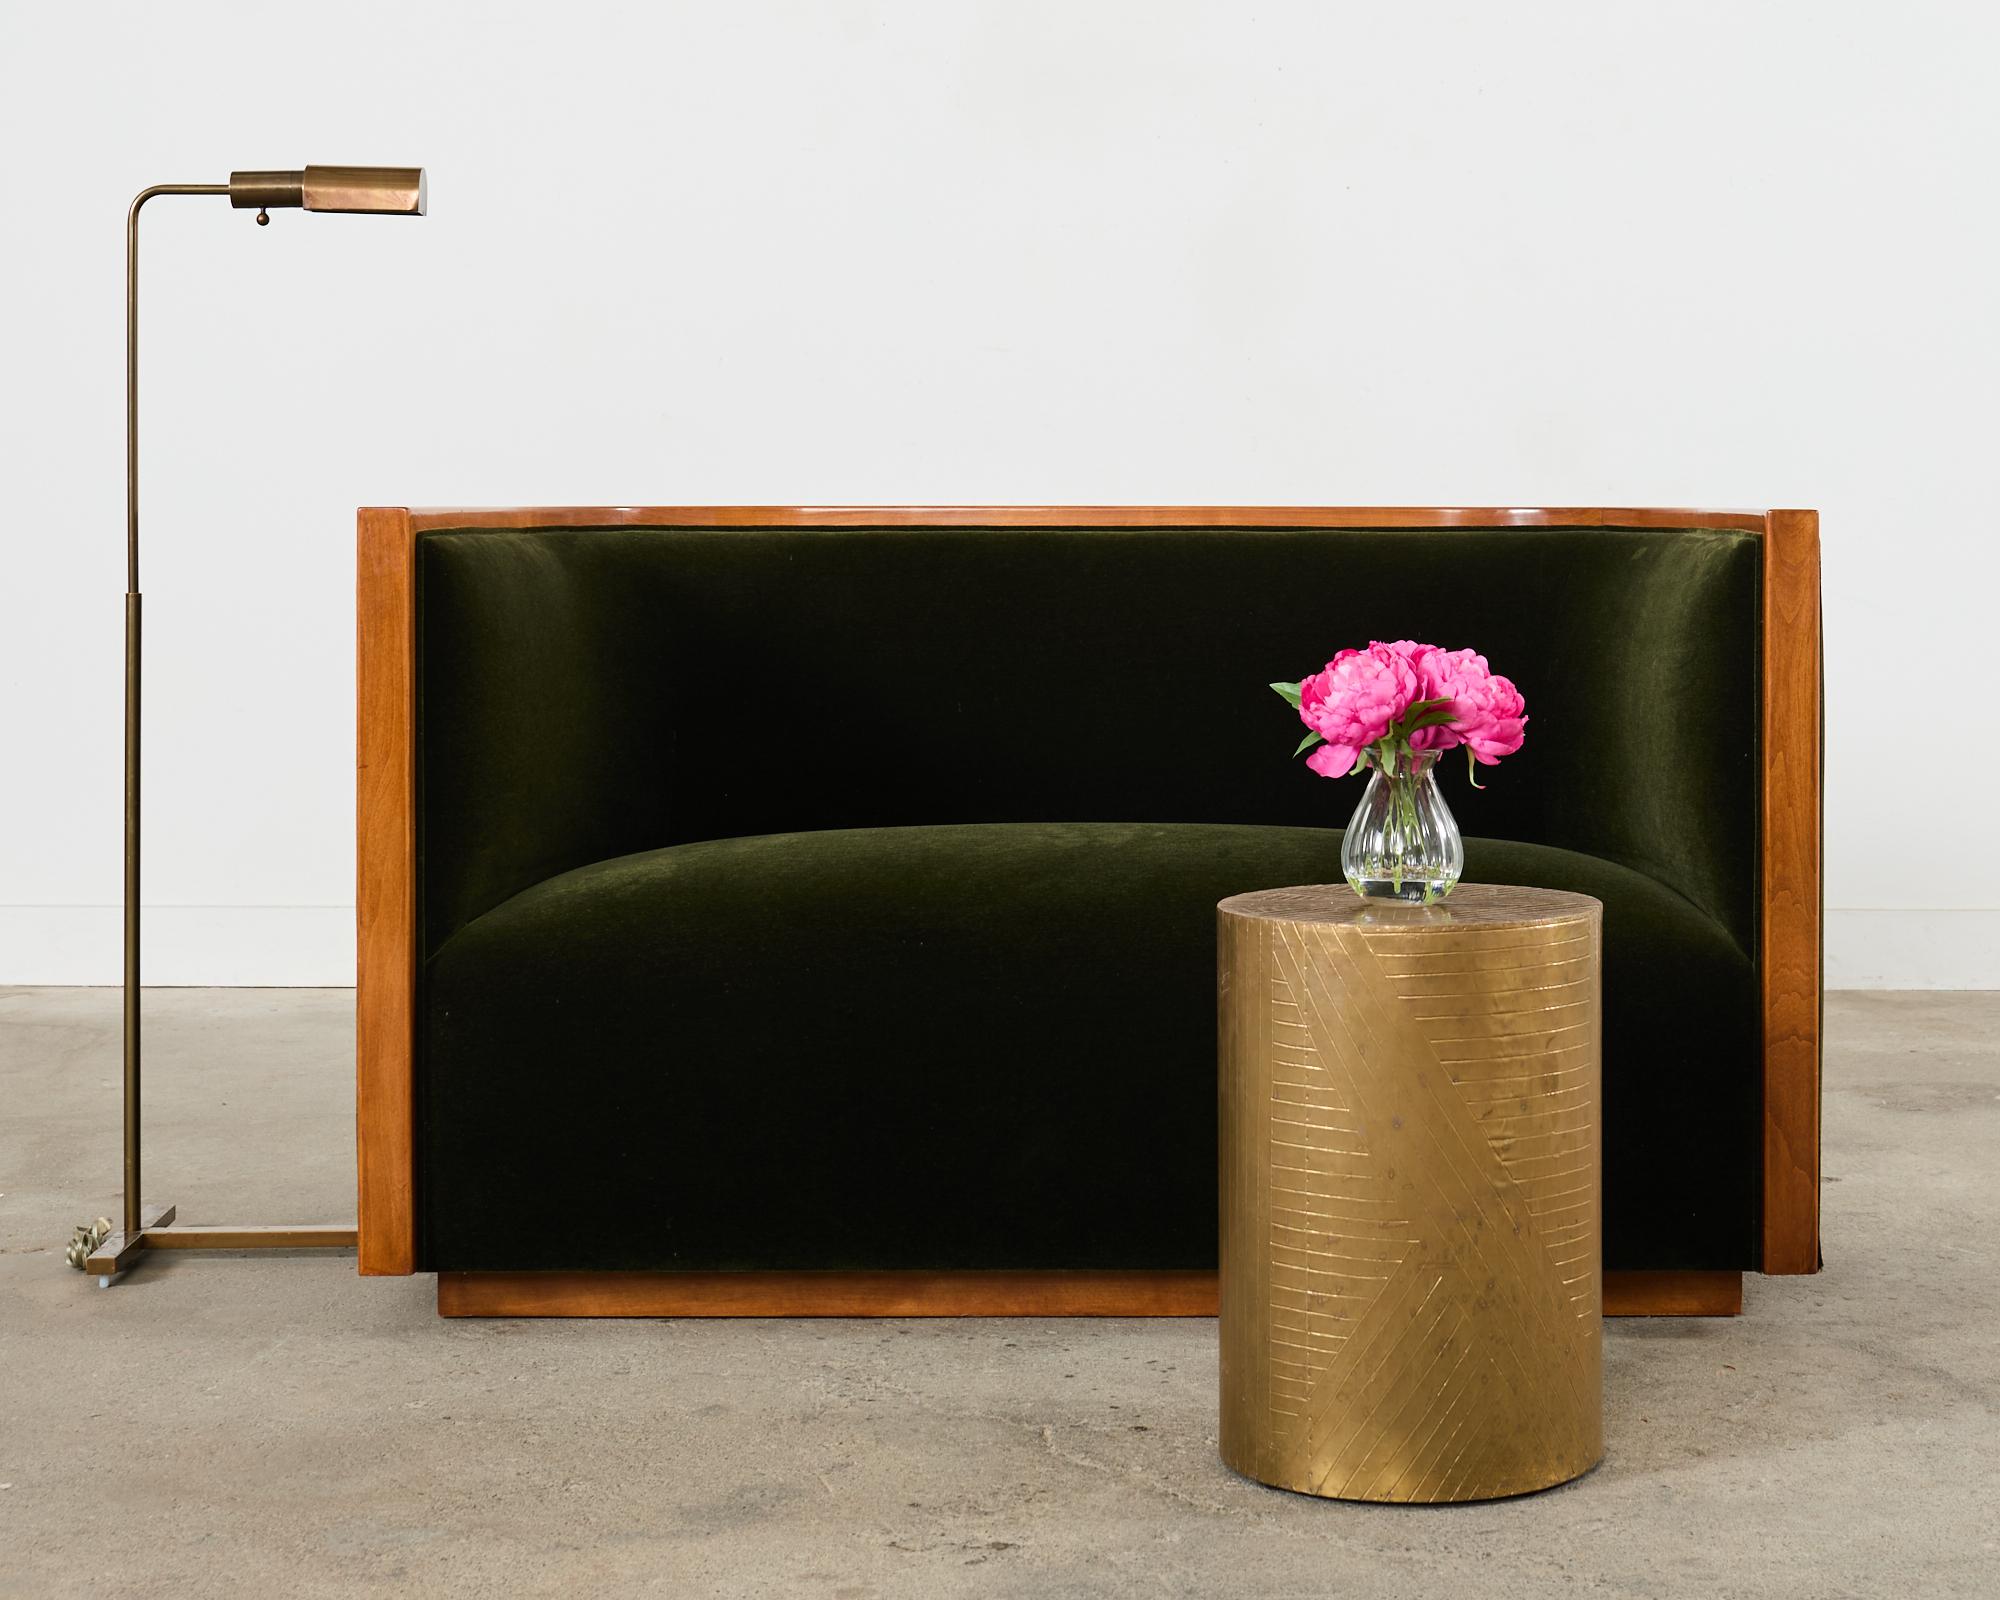 Dramatisches Birkensofa oder -sofa im Art-Déco-Stil, hergestellt in der Art und Weise und im Stil von Jules Leleu. Das Sofa ist mit einem plüschigen, dunkel smaragdgrünen Mohairbezug ausgestattet, der einen schönen Kontrast zum honigfarbenen